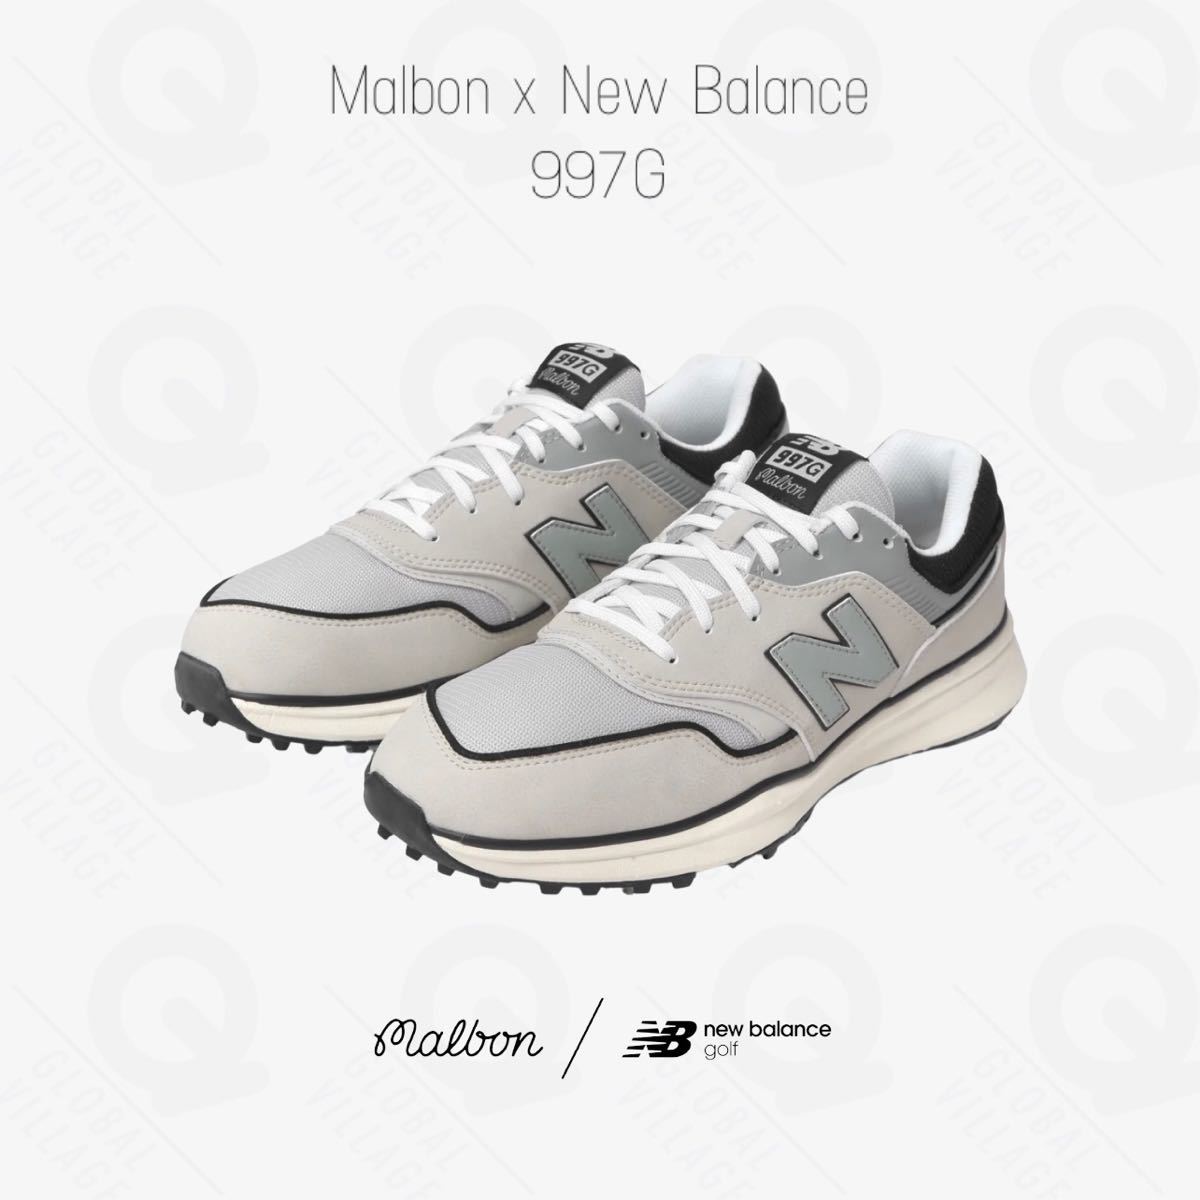 Malbon x New Balance 997G 数量限定 27.5cm スポーツ、レジャー